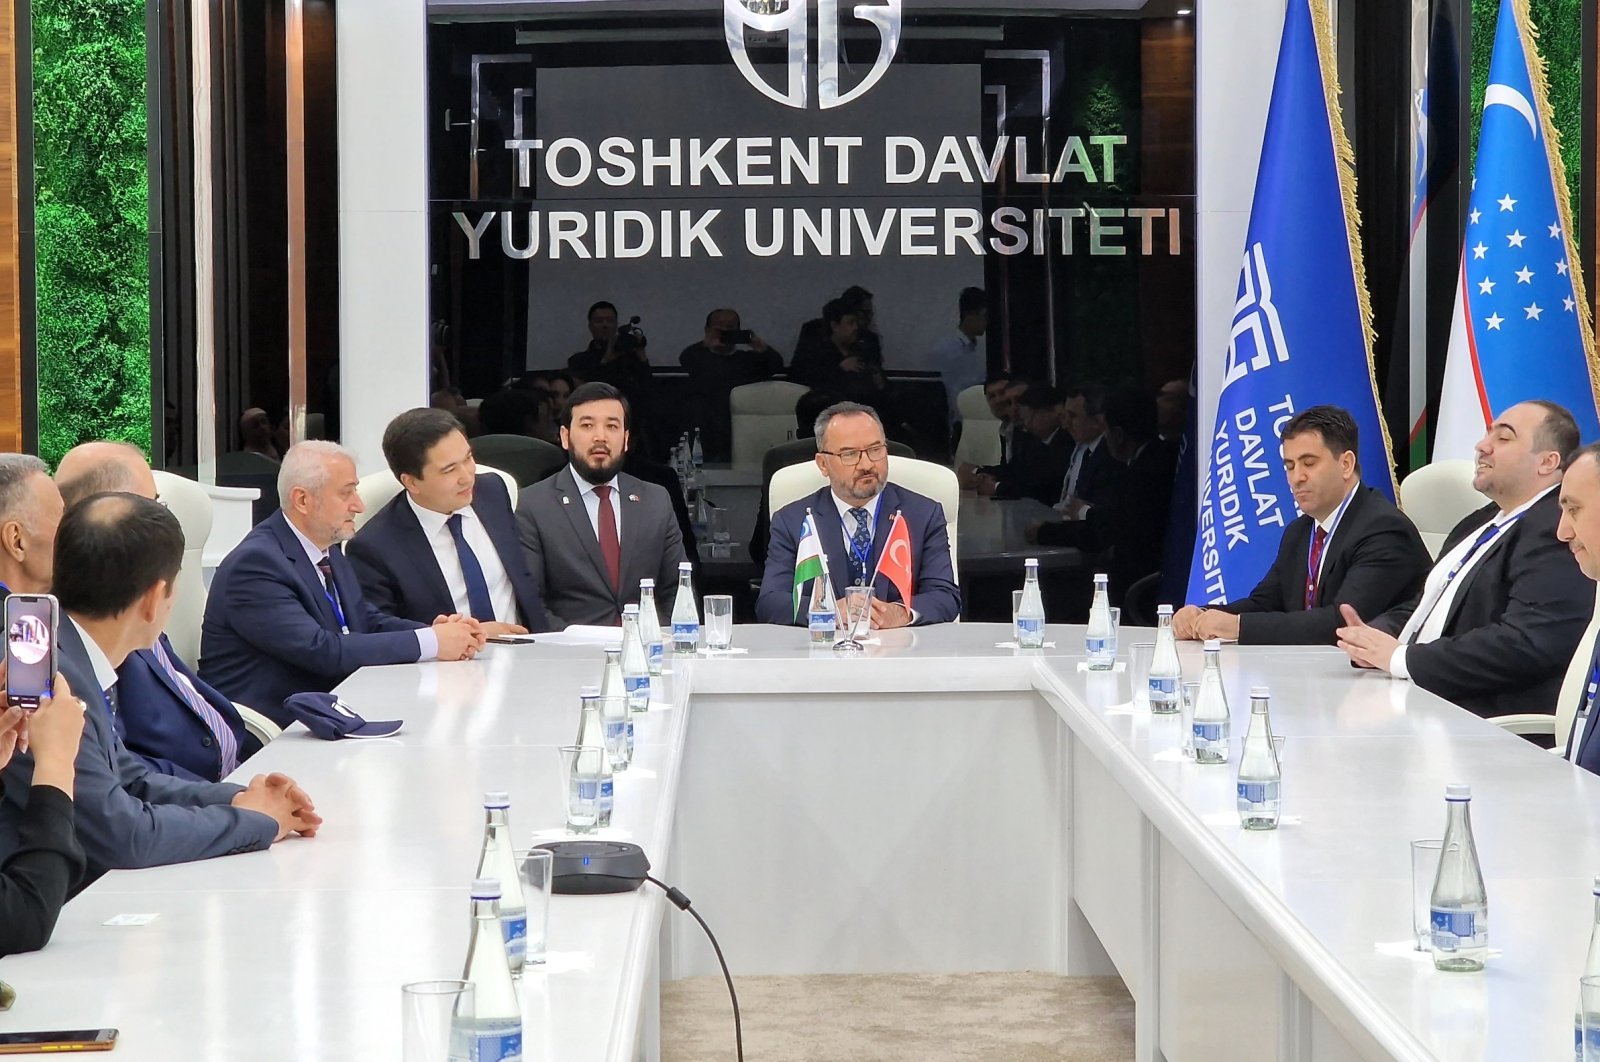 Pusat Penelitian Hukum Turki-Uzbek didirikan di Uzbekistan